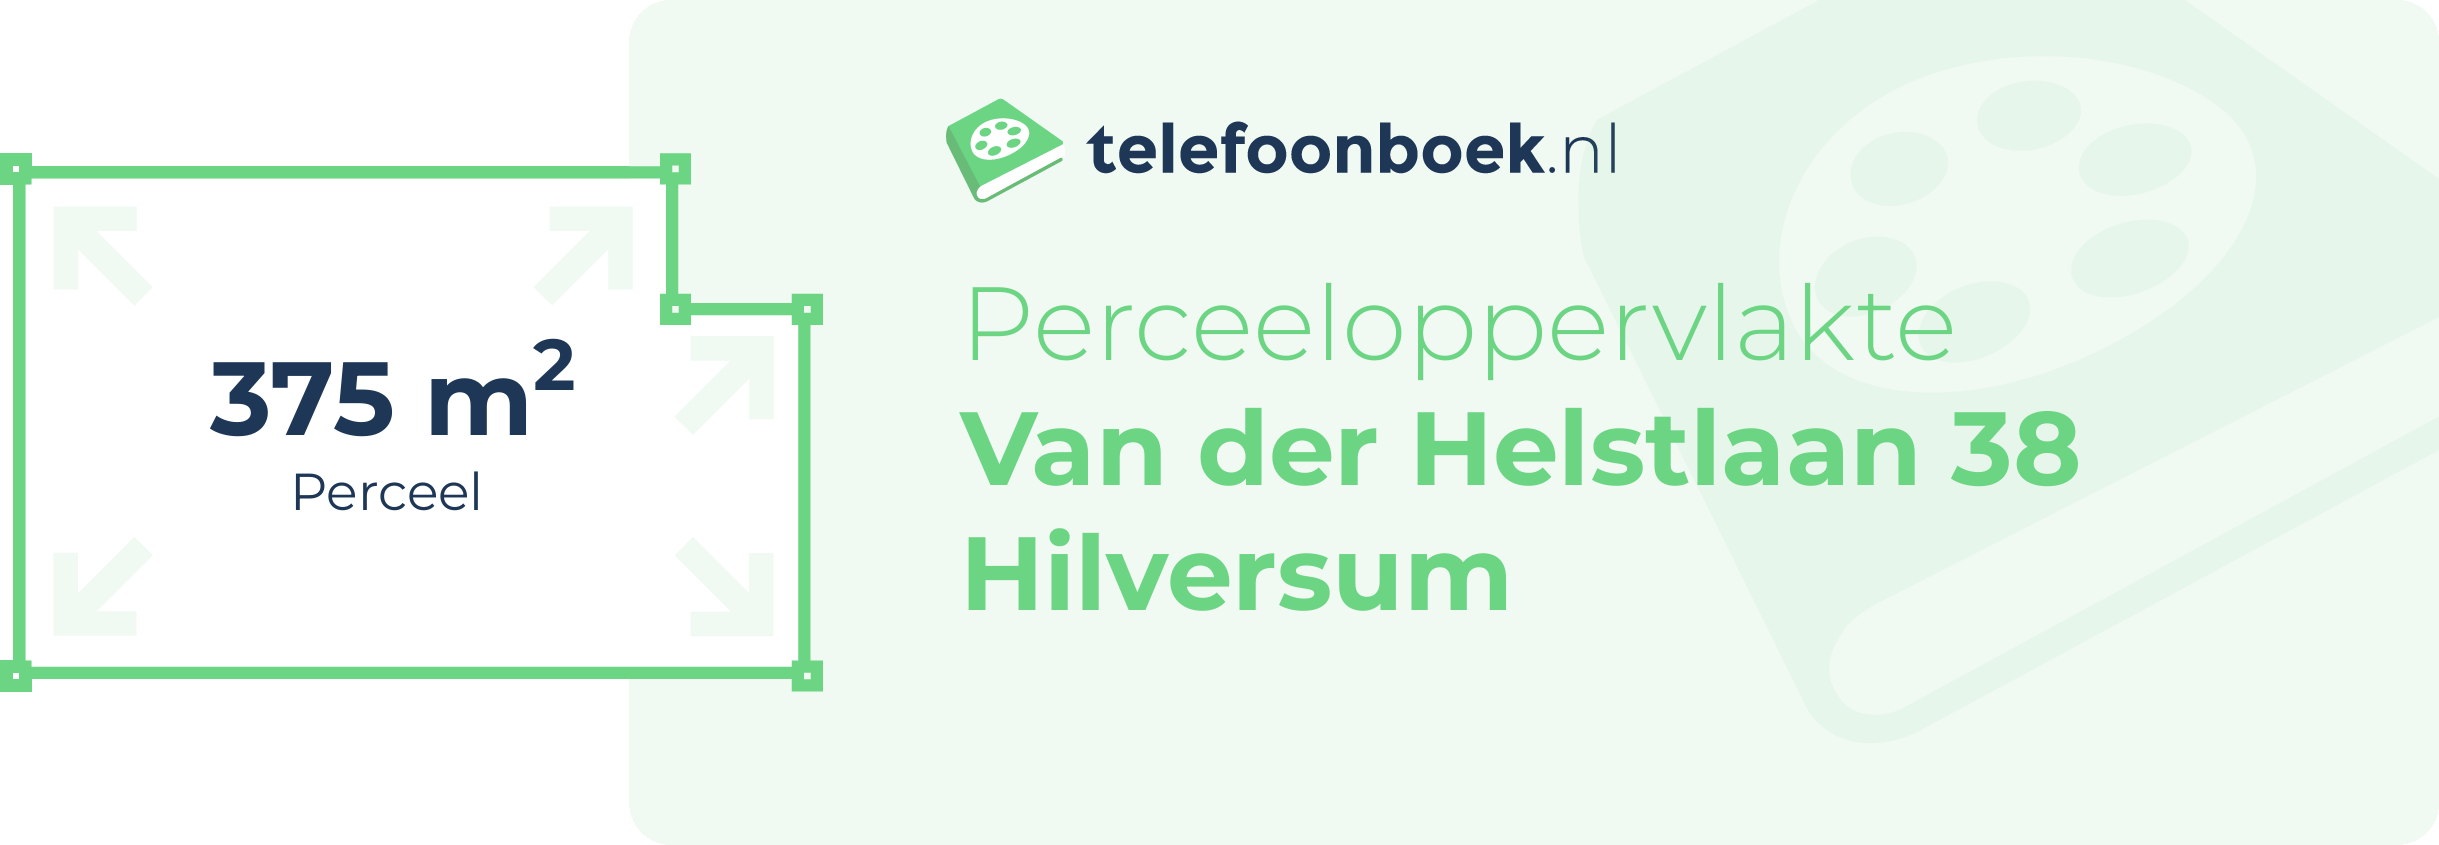 Perceeloppervlakte Van Der Helstlaan 38 Hilversum